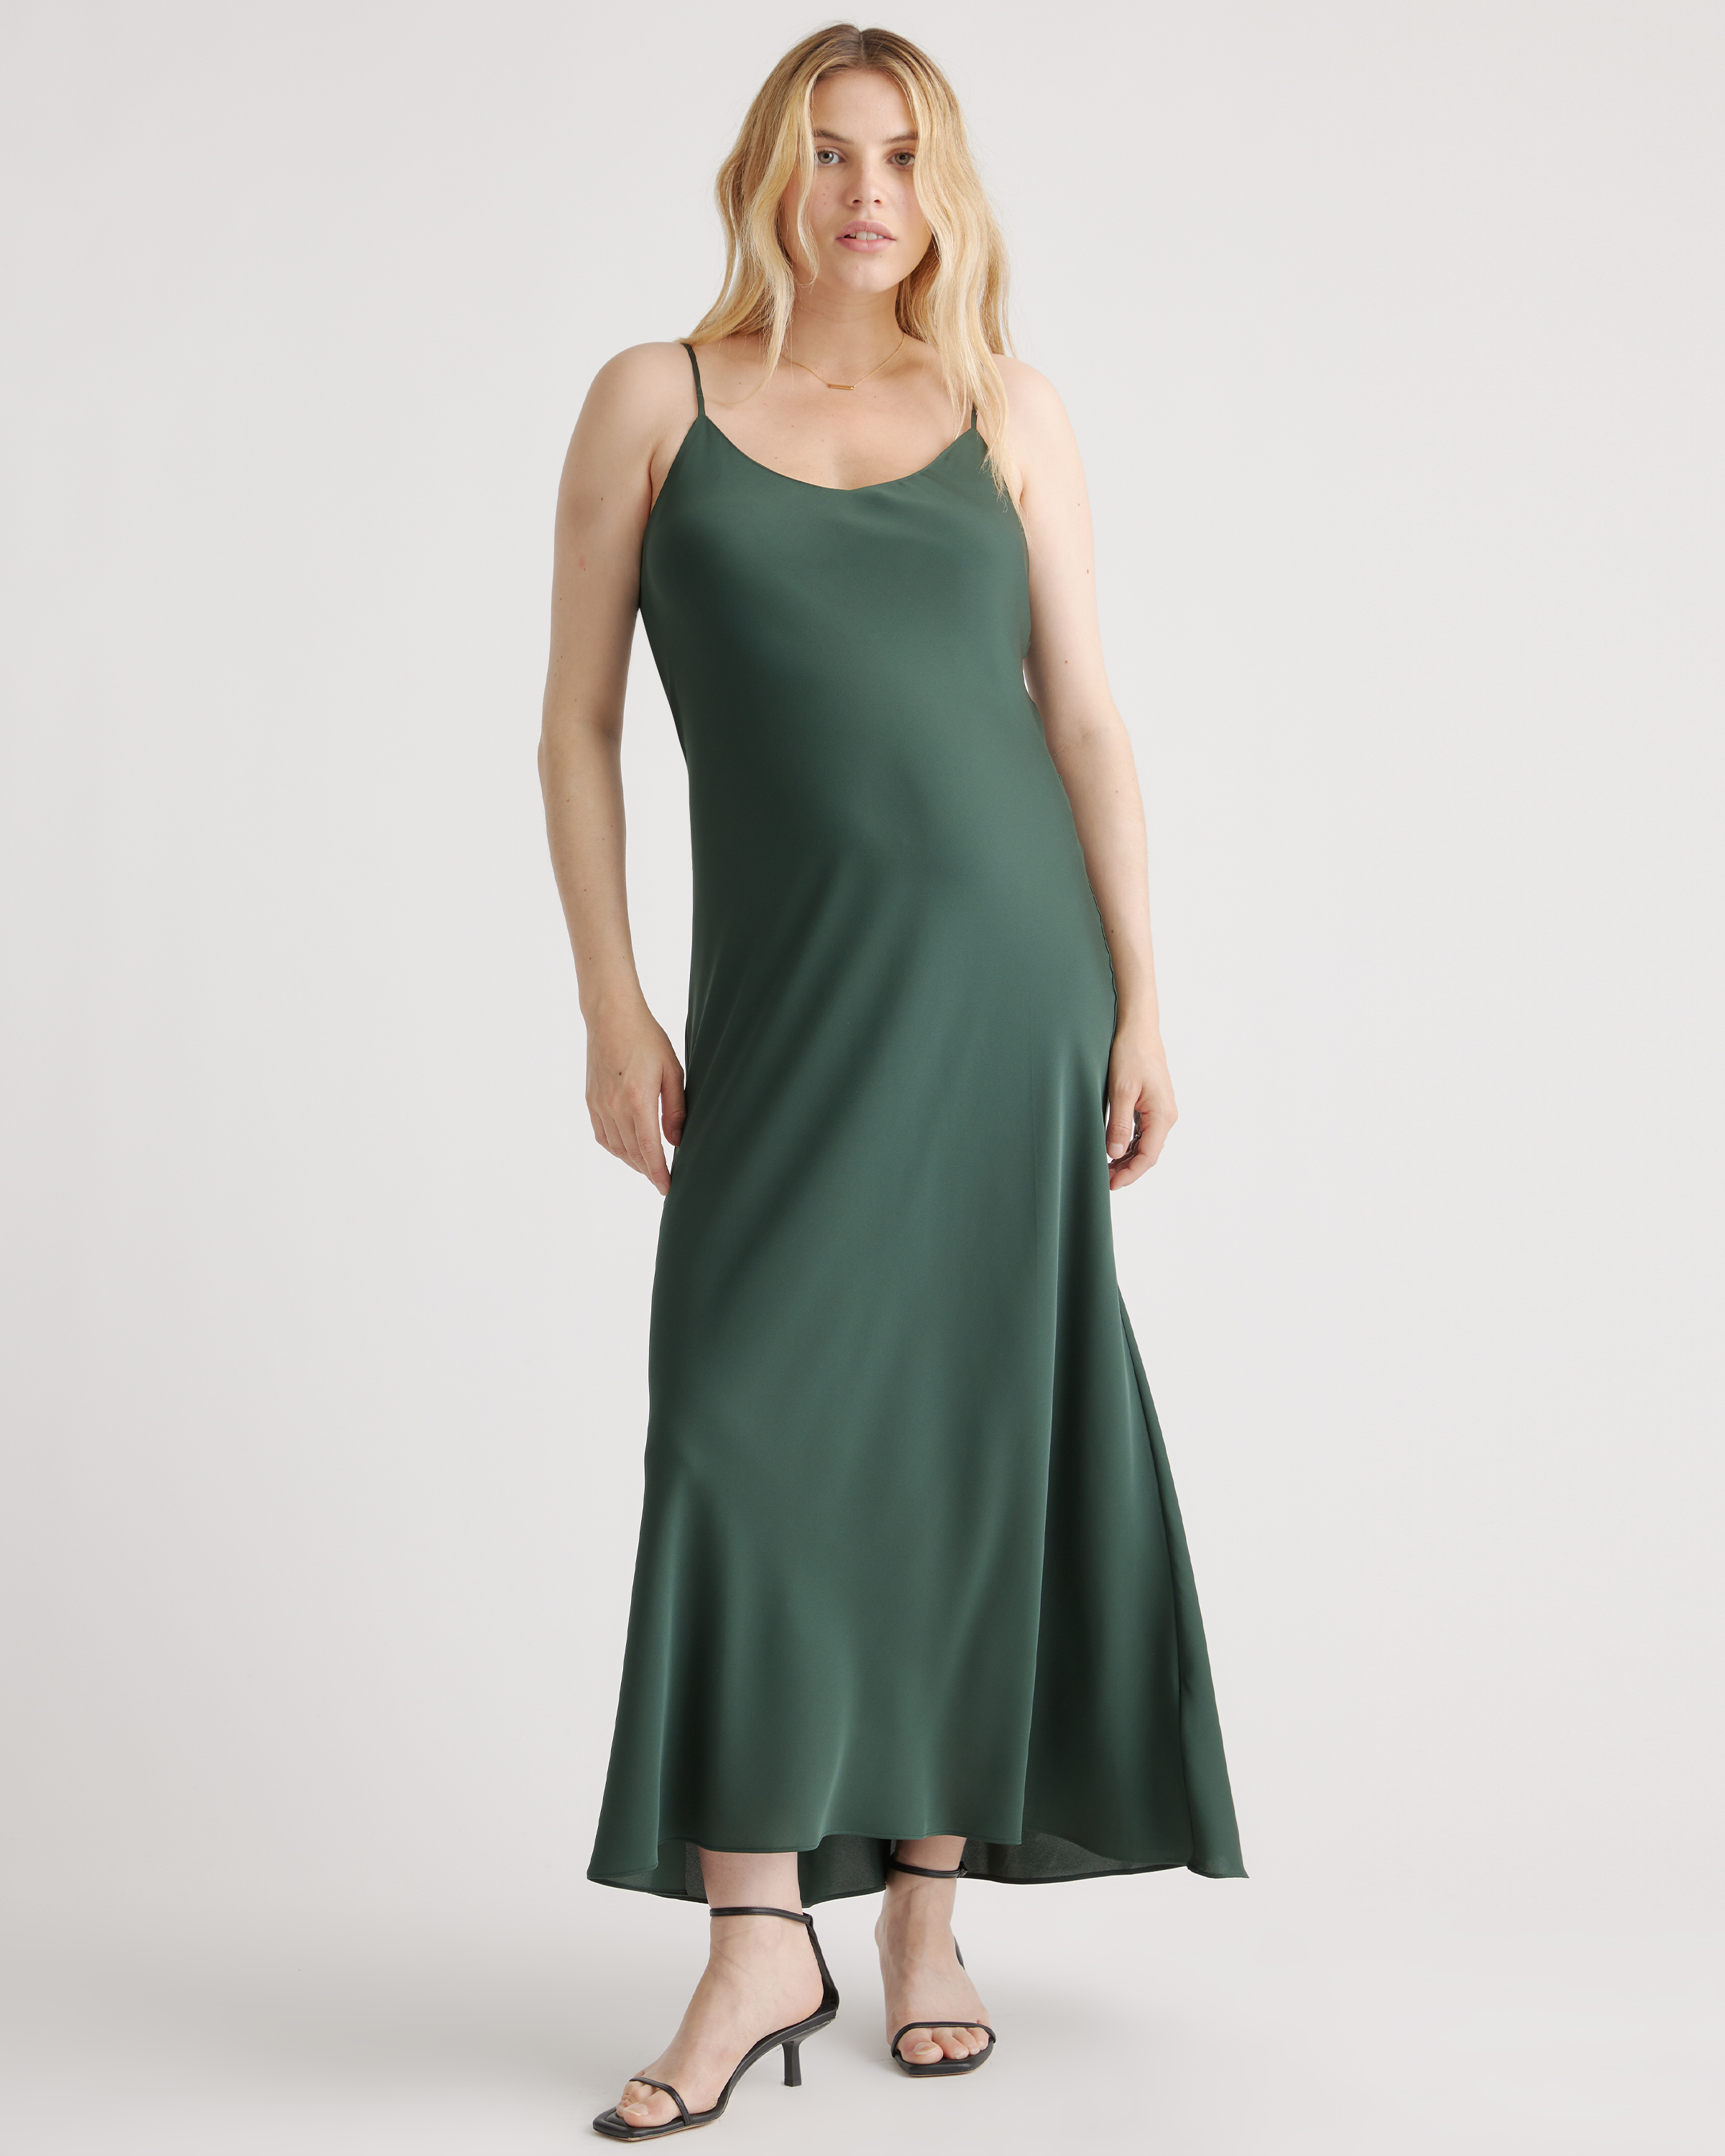 The Ricky Slip Dress  Slip dress, Pregnancy maxi dress, Maternity capsule  wardrobe